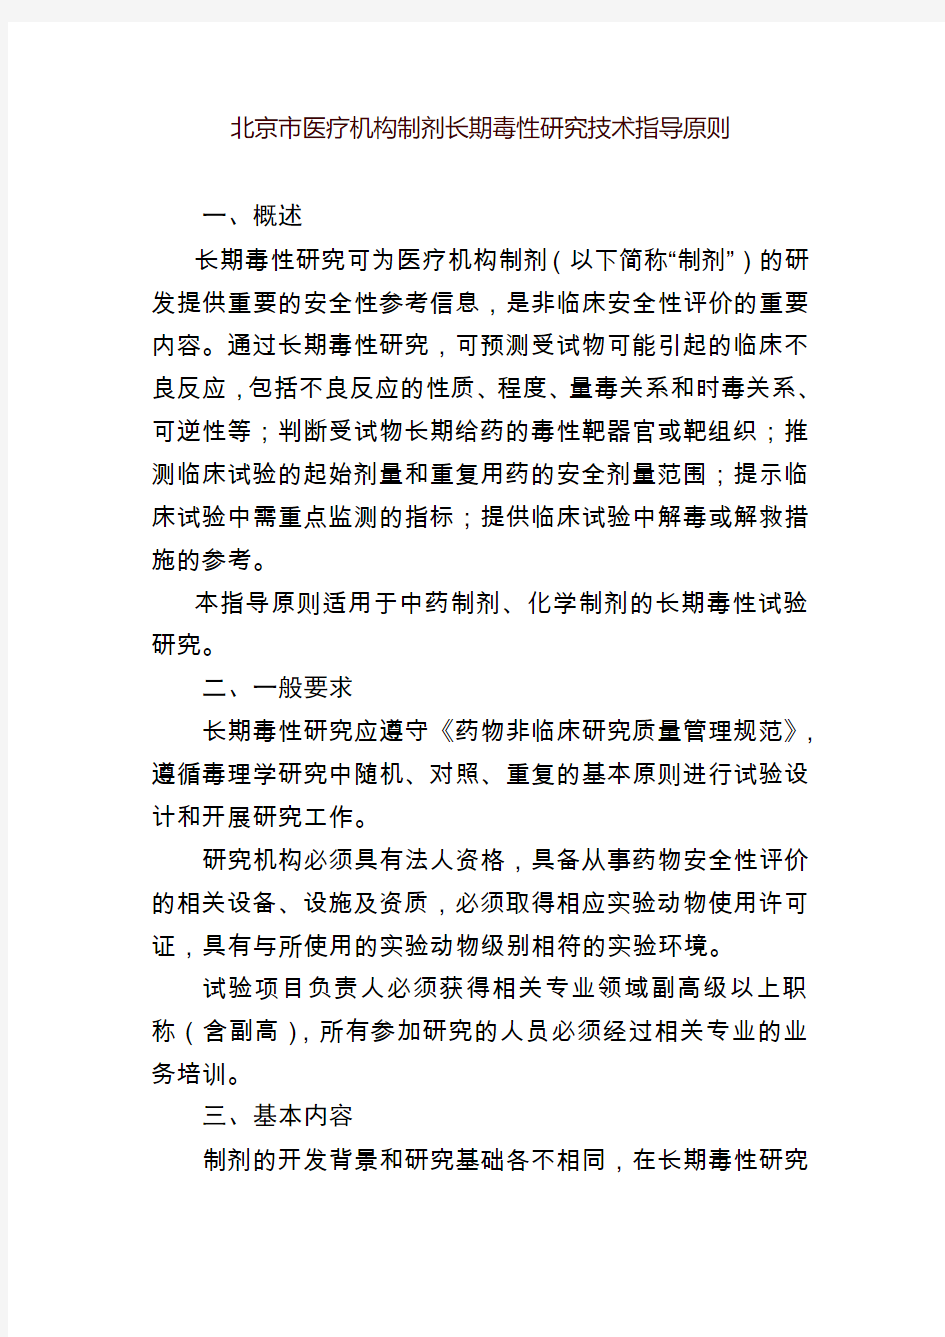 北京市医疗机构制剂长期毒性研究技术指导原则